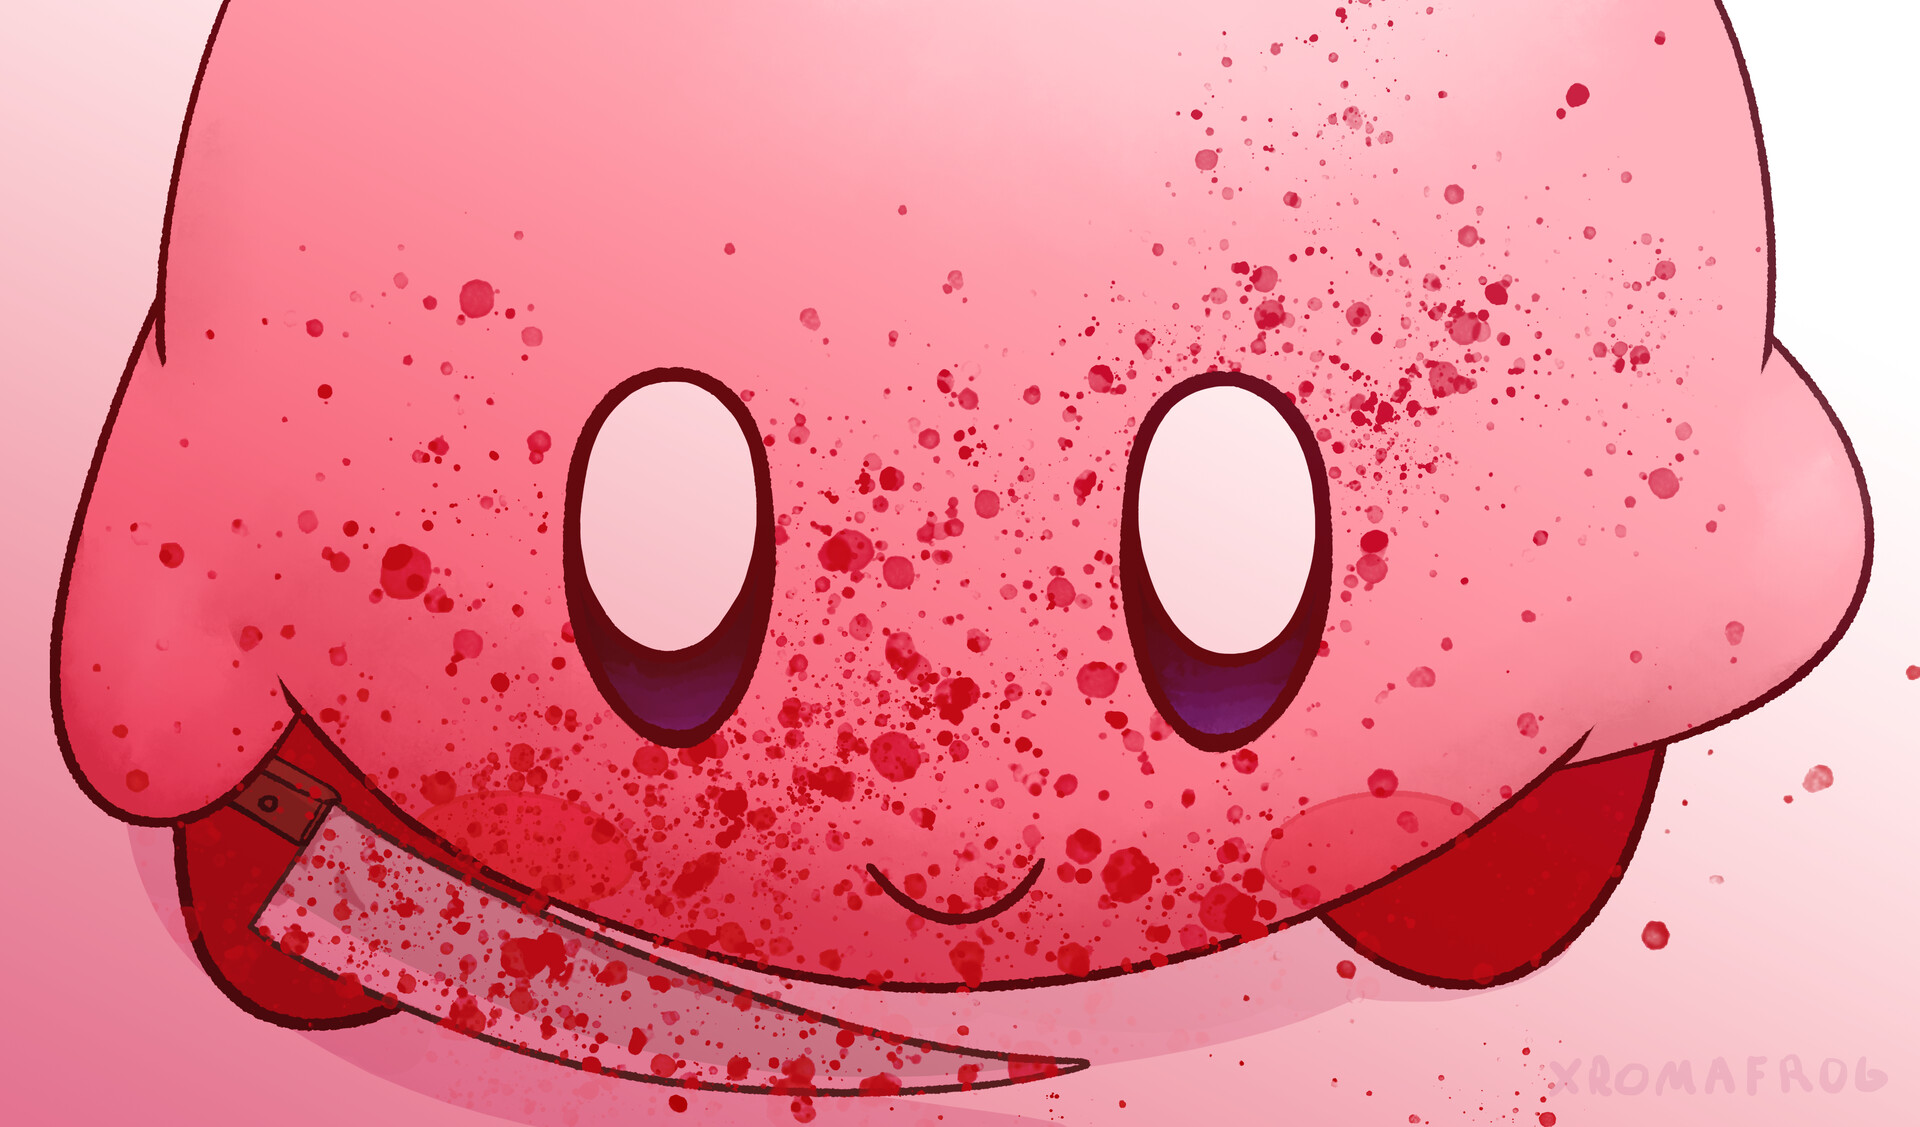 ArtStation - Scary Kirby